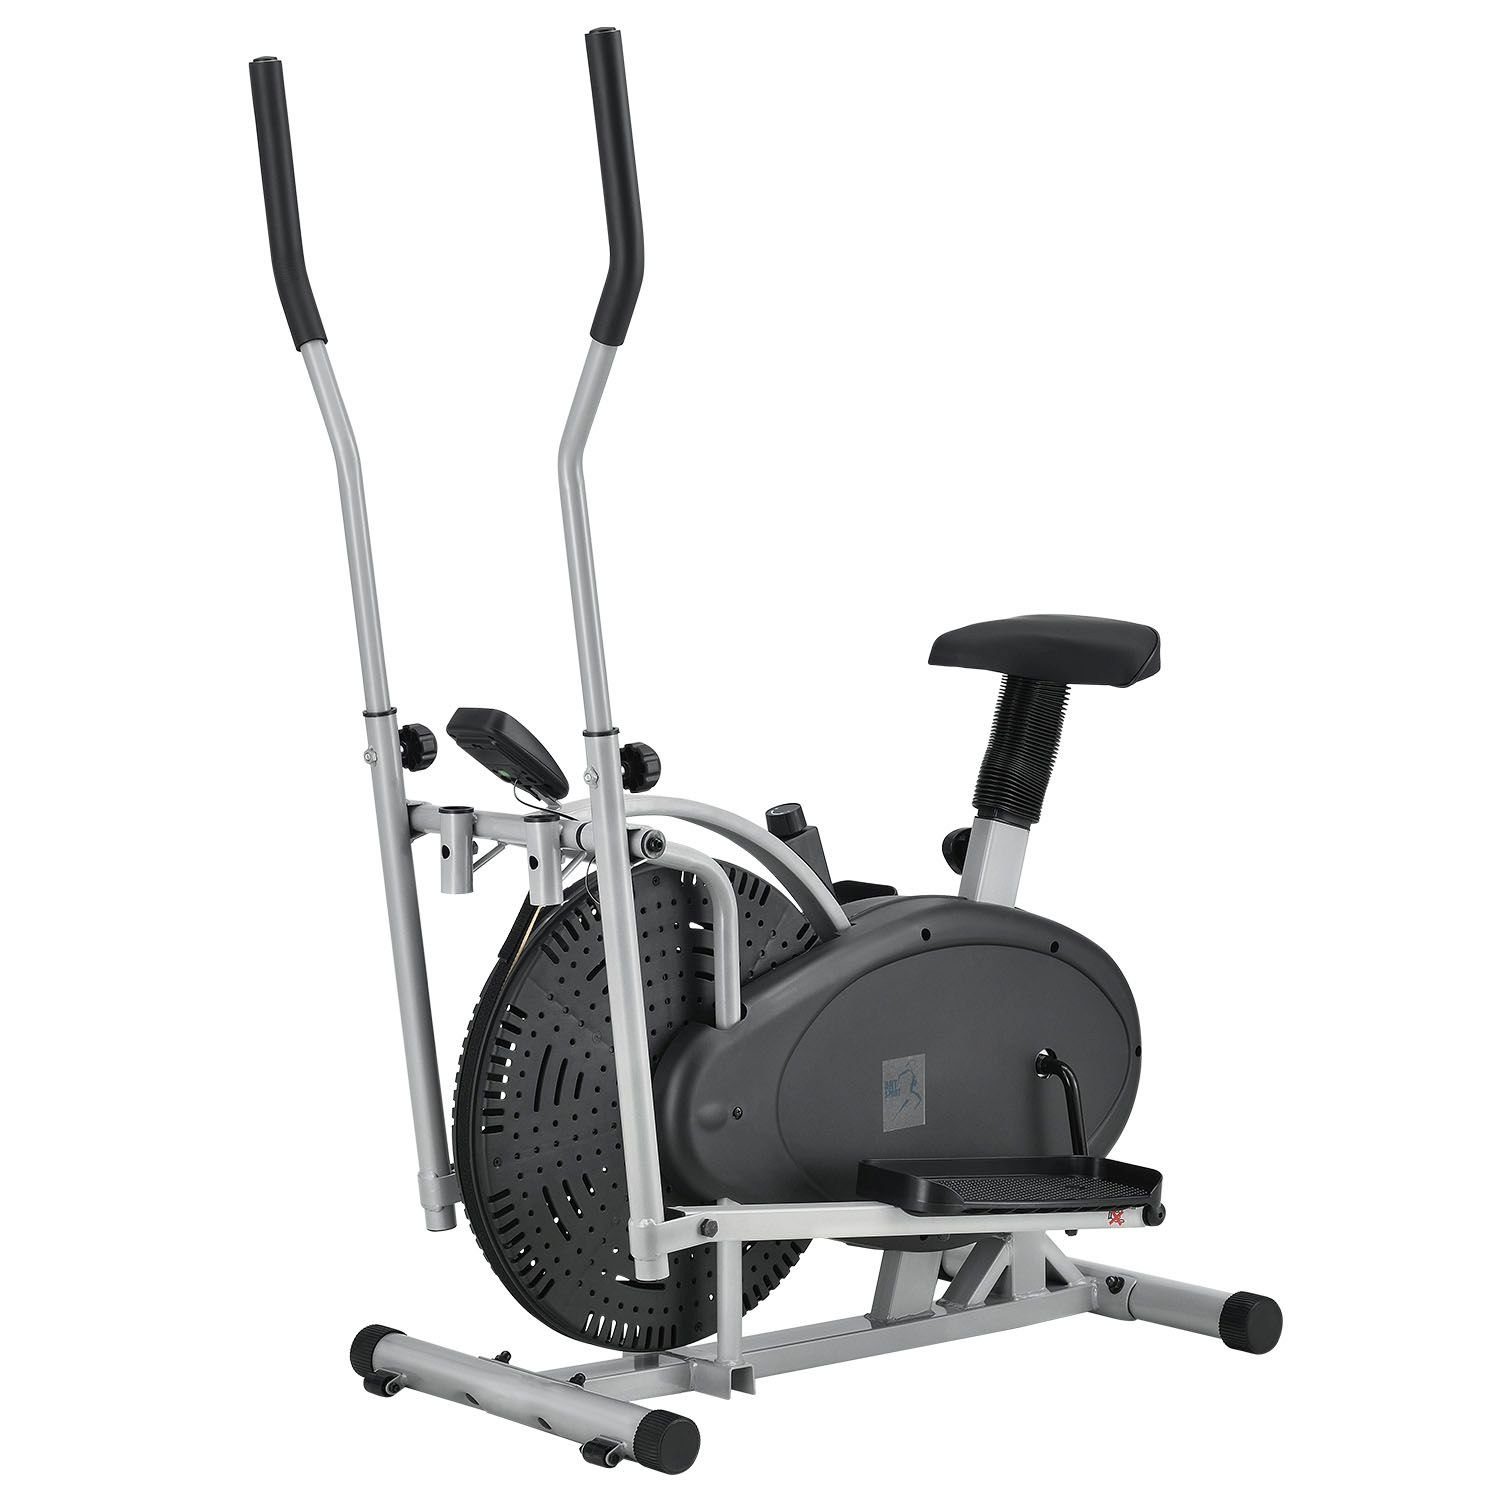 ArtSport Crosstrainer Crosstrainer, Leiser Riemenantrieb, 2 kg Schwungrad,  stufenloser Widerstand, LCD Display, höhenverstellbarer Sitz